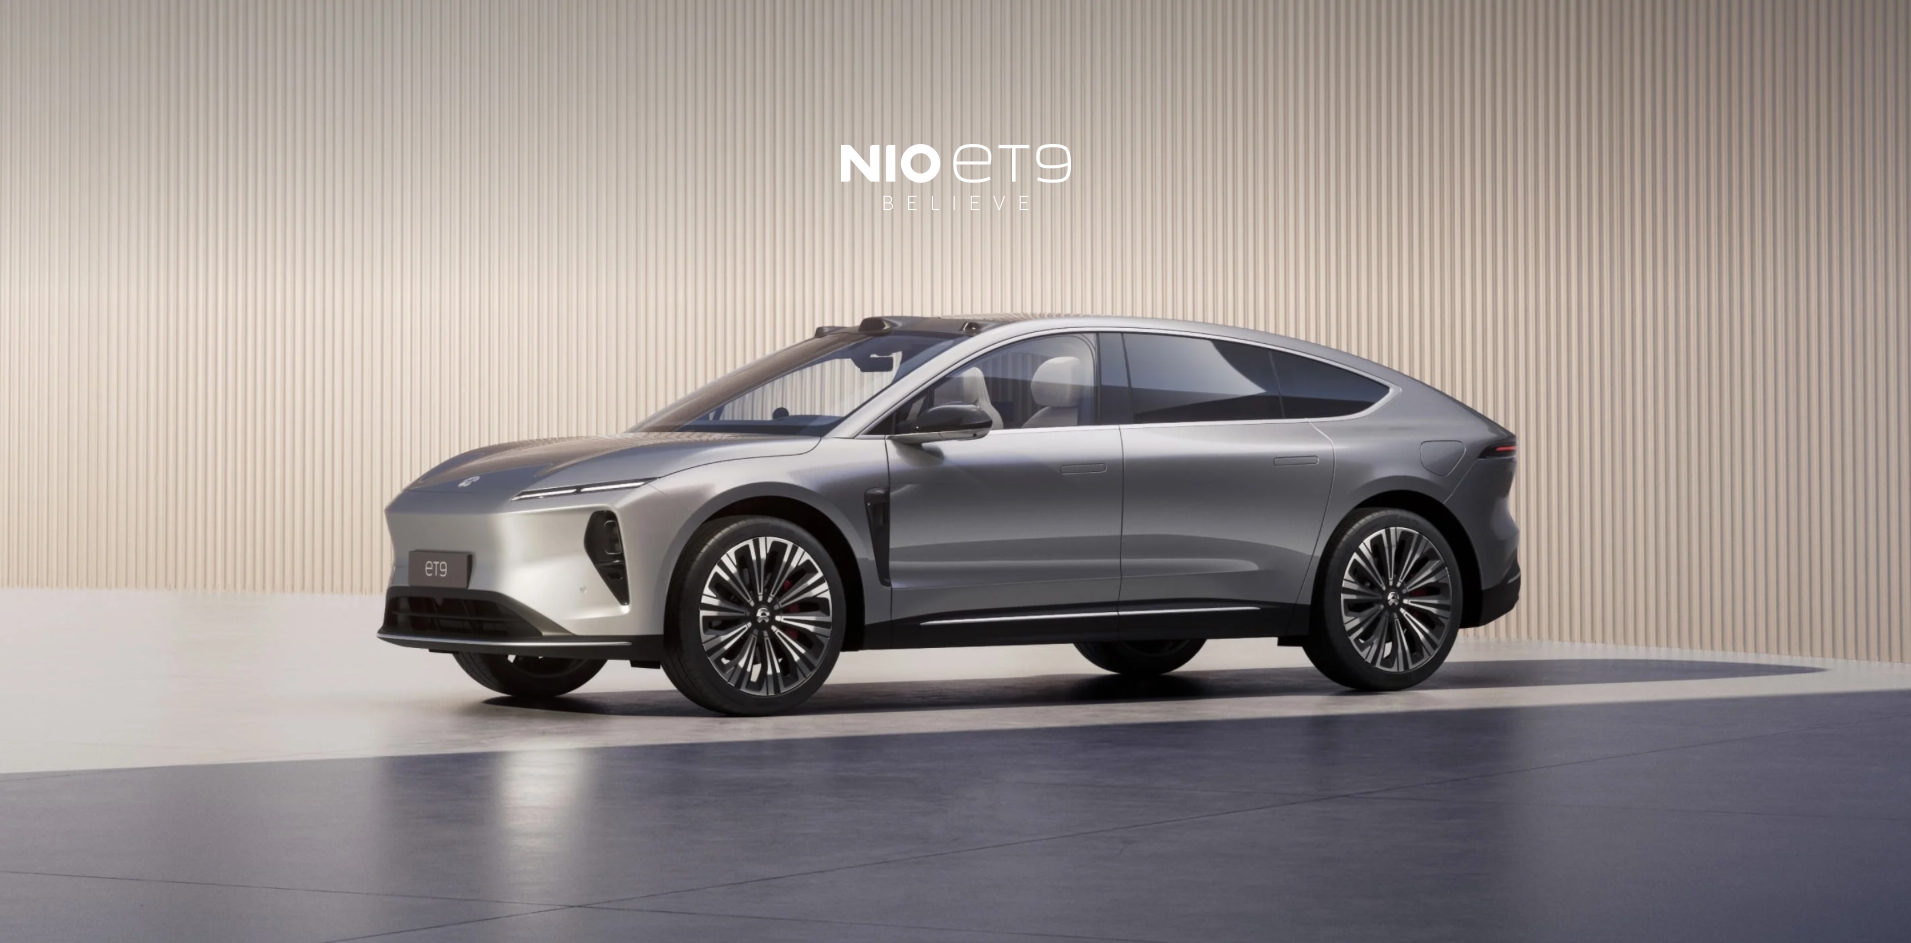 För att konkurrera med Mercedes-Benz Maybach: Nio har presenterat premiumelbilen ET9 för 112 000 dollar